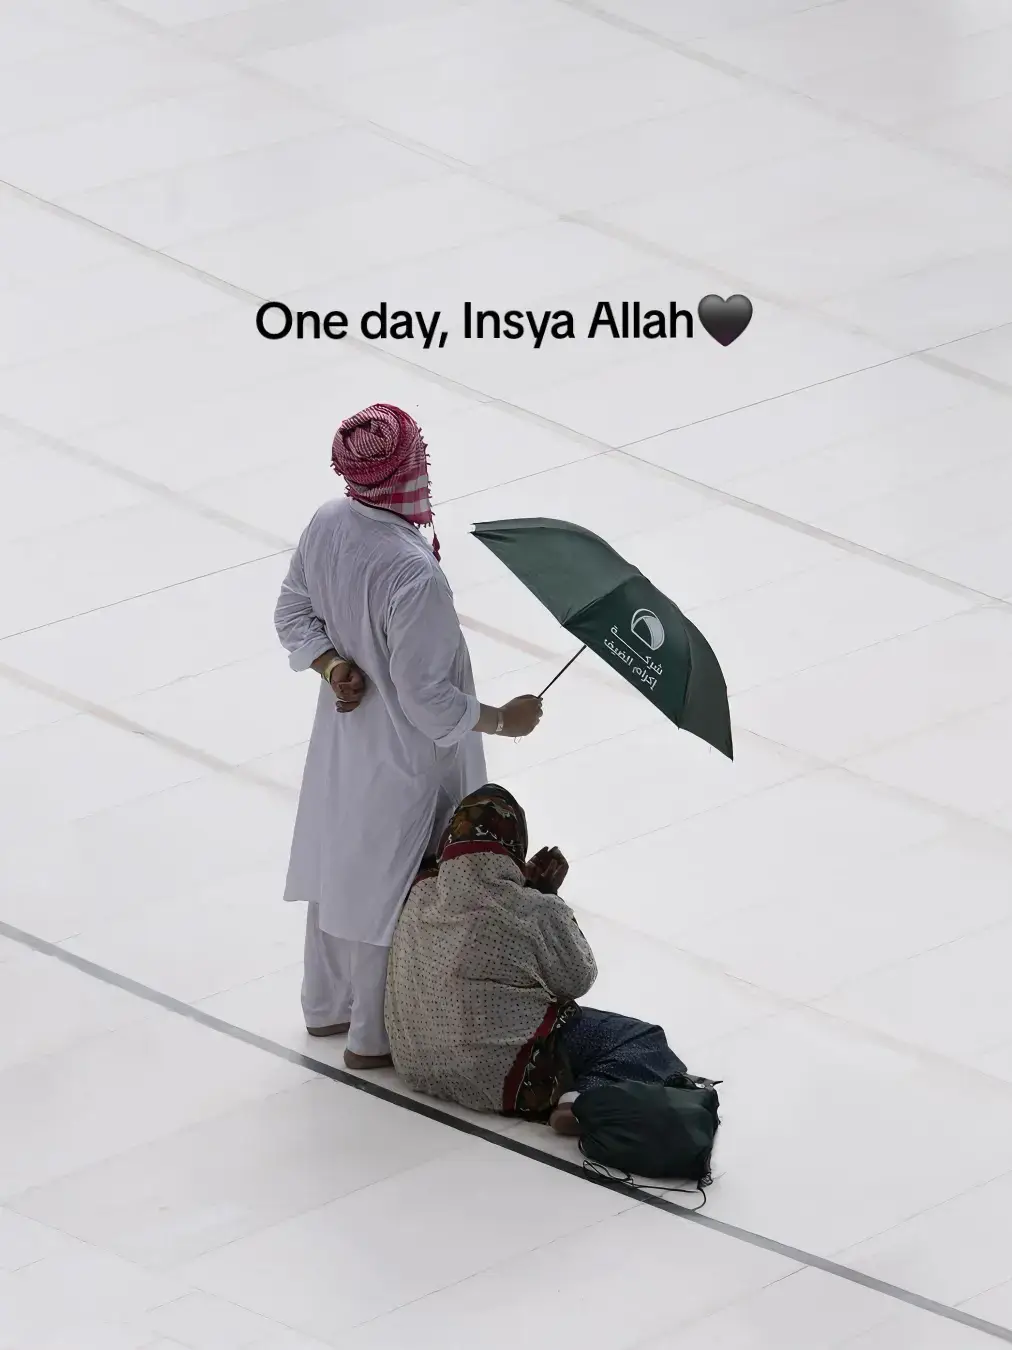 Indah banget❤️ #couple #couplehalal #oneday #makkah #fypシ #fyp #fypシ゚viral #xyzbca 